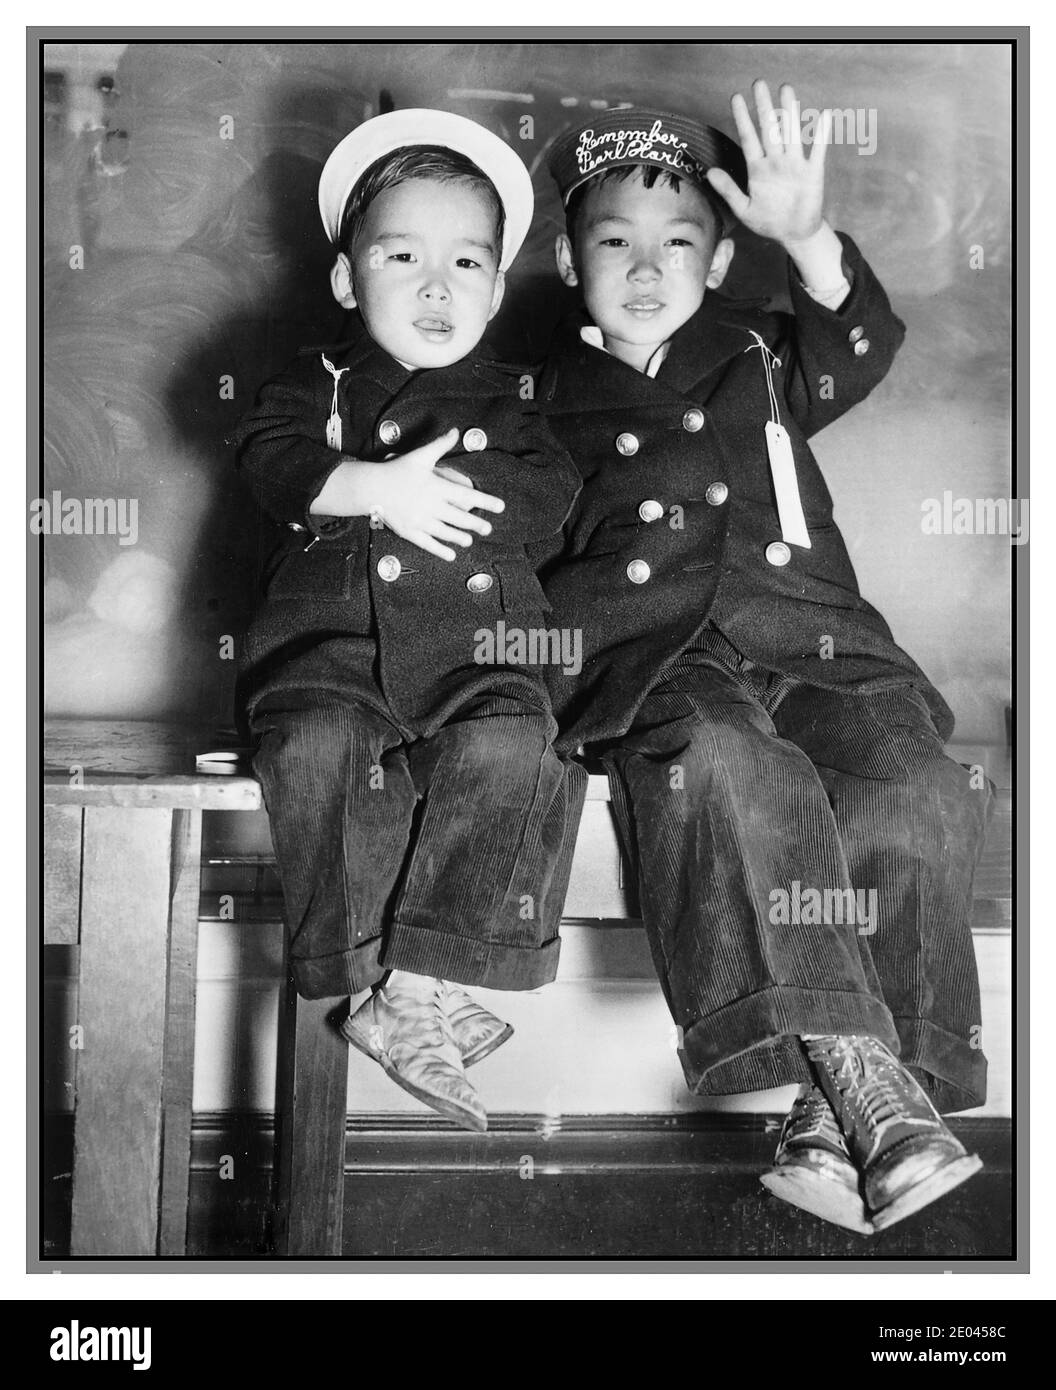 WW2 Propaganda Foto Giapponese Evacuizione da USA San Francisco (California) 1941 evacuazione - due ragazzi giapponesi, uno con la striscia 'Remember Pearl Harbor' sul suo cappello, onda addio [mentre] in attesa dell'autobus Stati Uniti. Esercito. Signal Corps.[1942] - evacuazioni--California--San Francisco--1940-1950 - ragazzi--California--San Francisco--1940-1950 - Guerra Mondiale, 1939-1945--Americani giapponesi--California--Arrivi e partenze di San Francisco--California--San Francisco--1940-1950 Photographic prints--1940-1950. Foto Stock